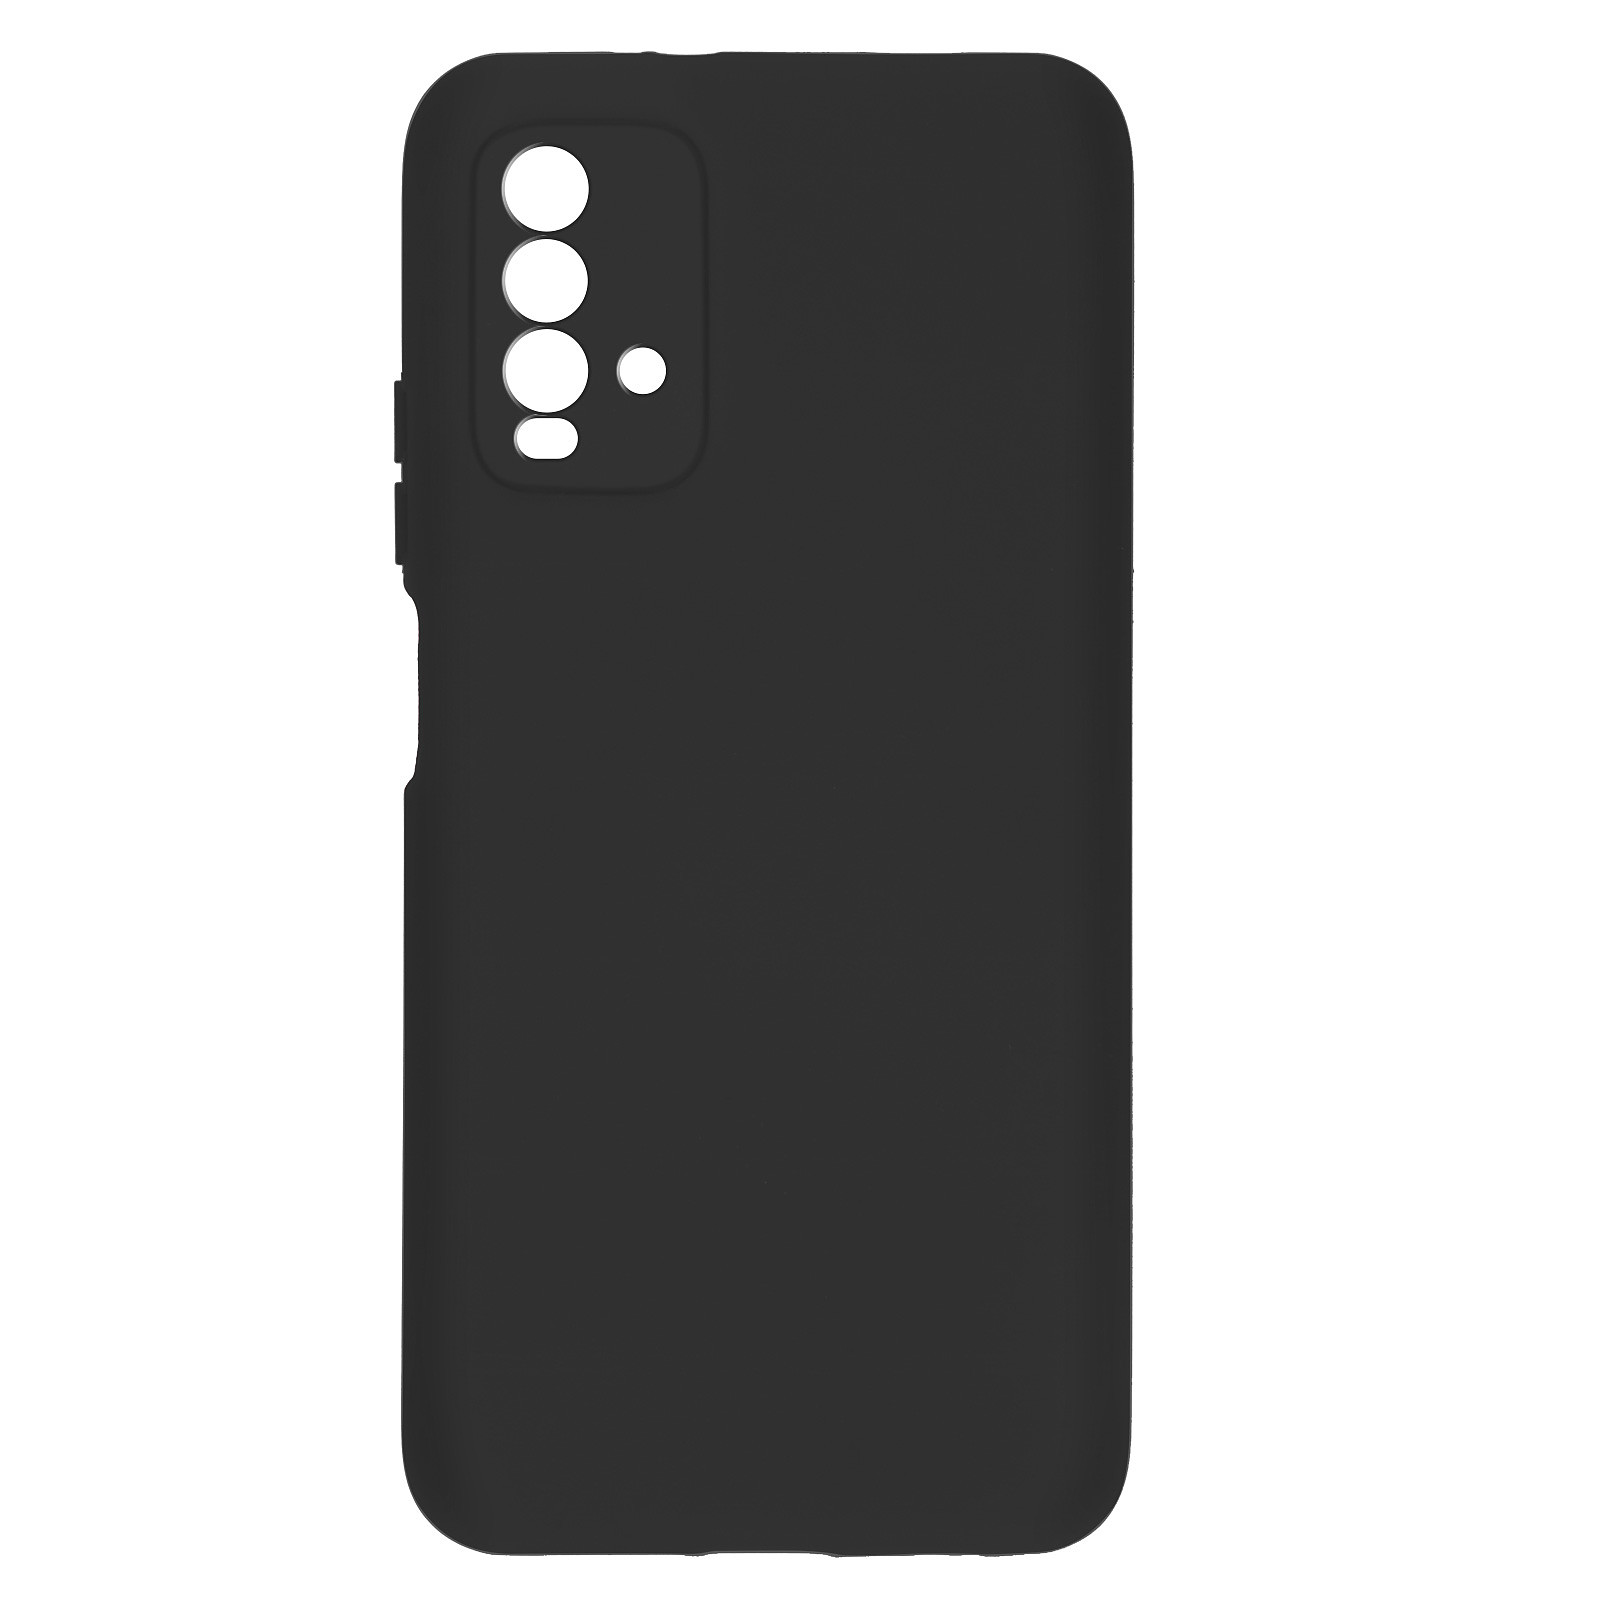 Avizar Coque pour Xiaomi Redmi 9T Silicone Semi-rigide Finition Soft Touch Fine Noir - Coque telephone Avizar